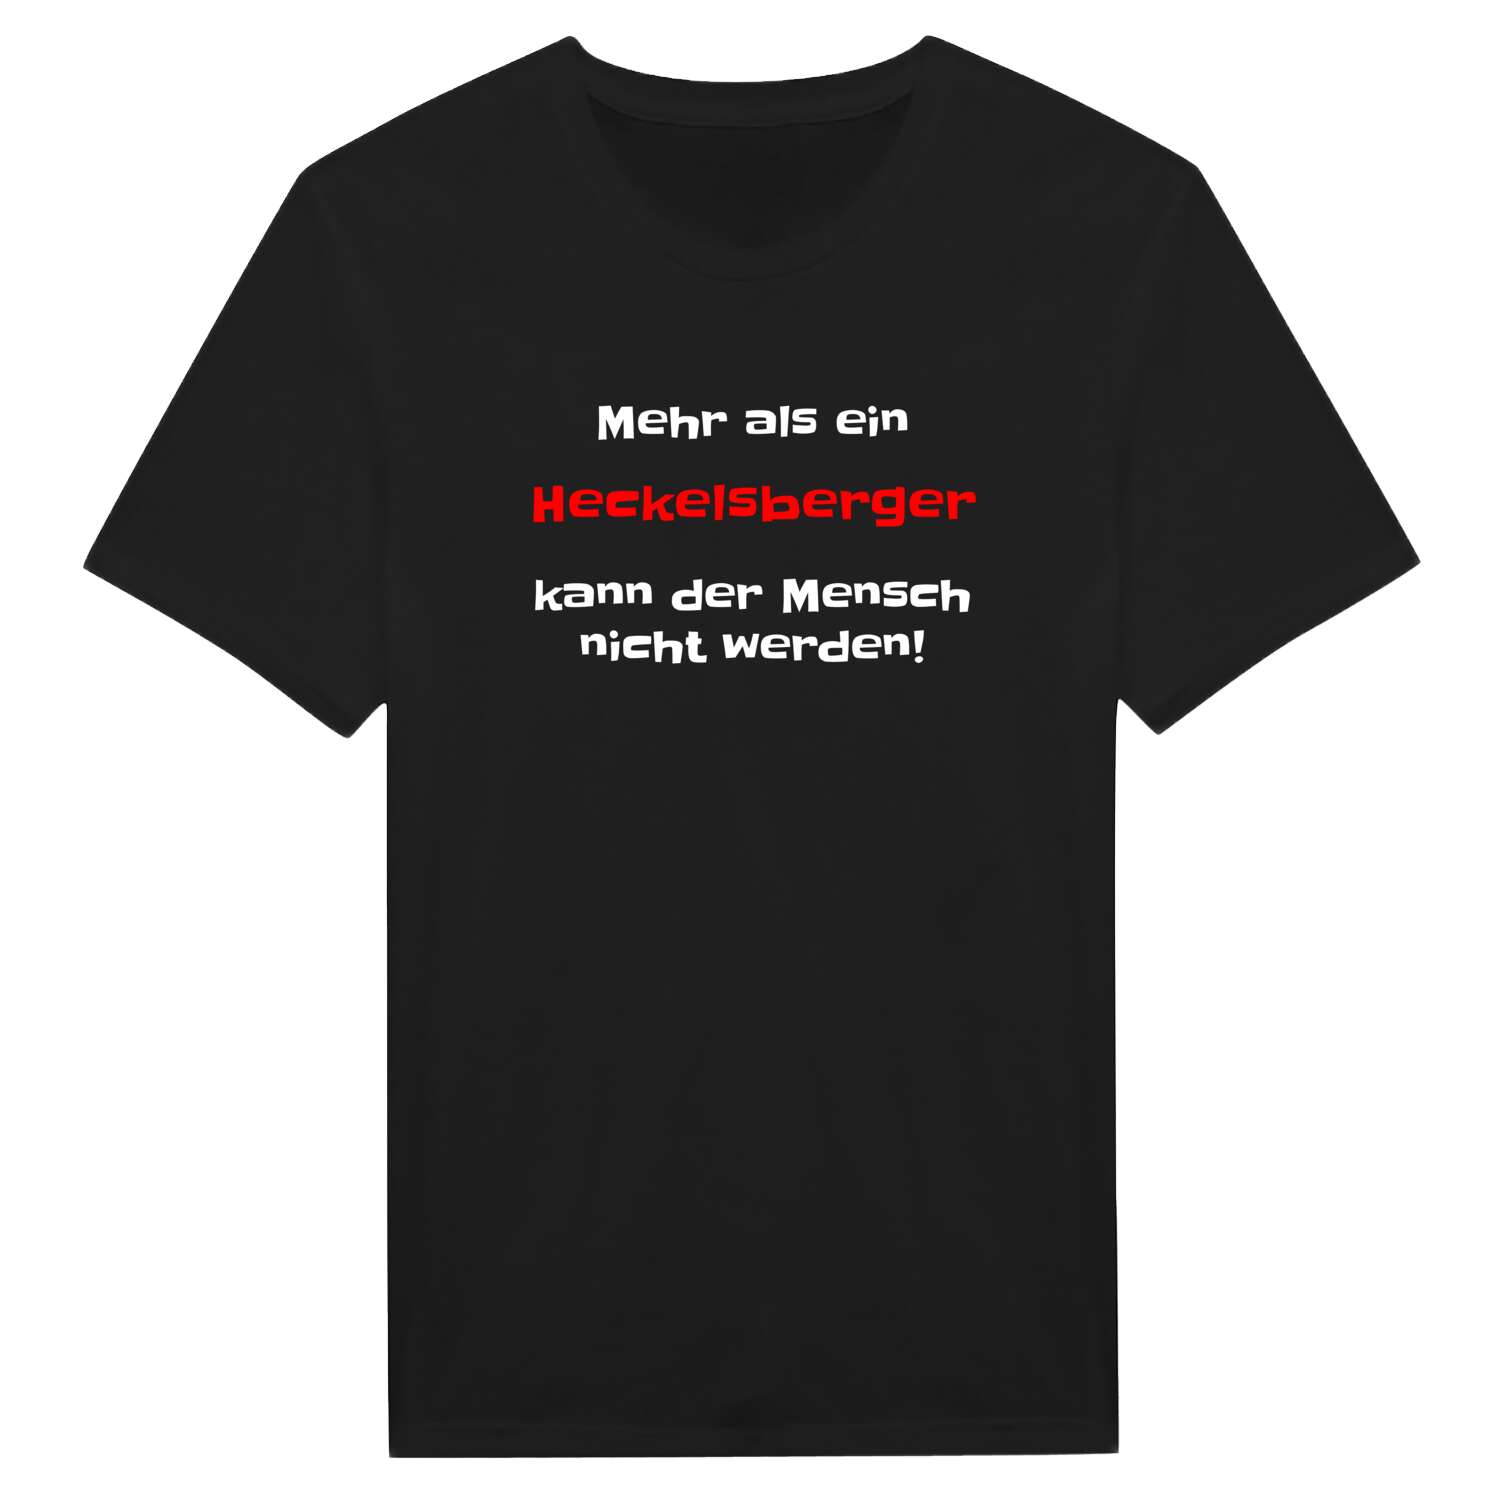 Heckelsberg T-Shirt »Mehr als ein«